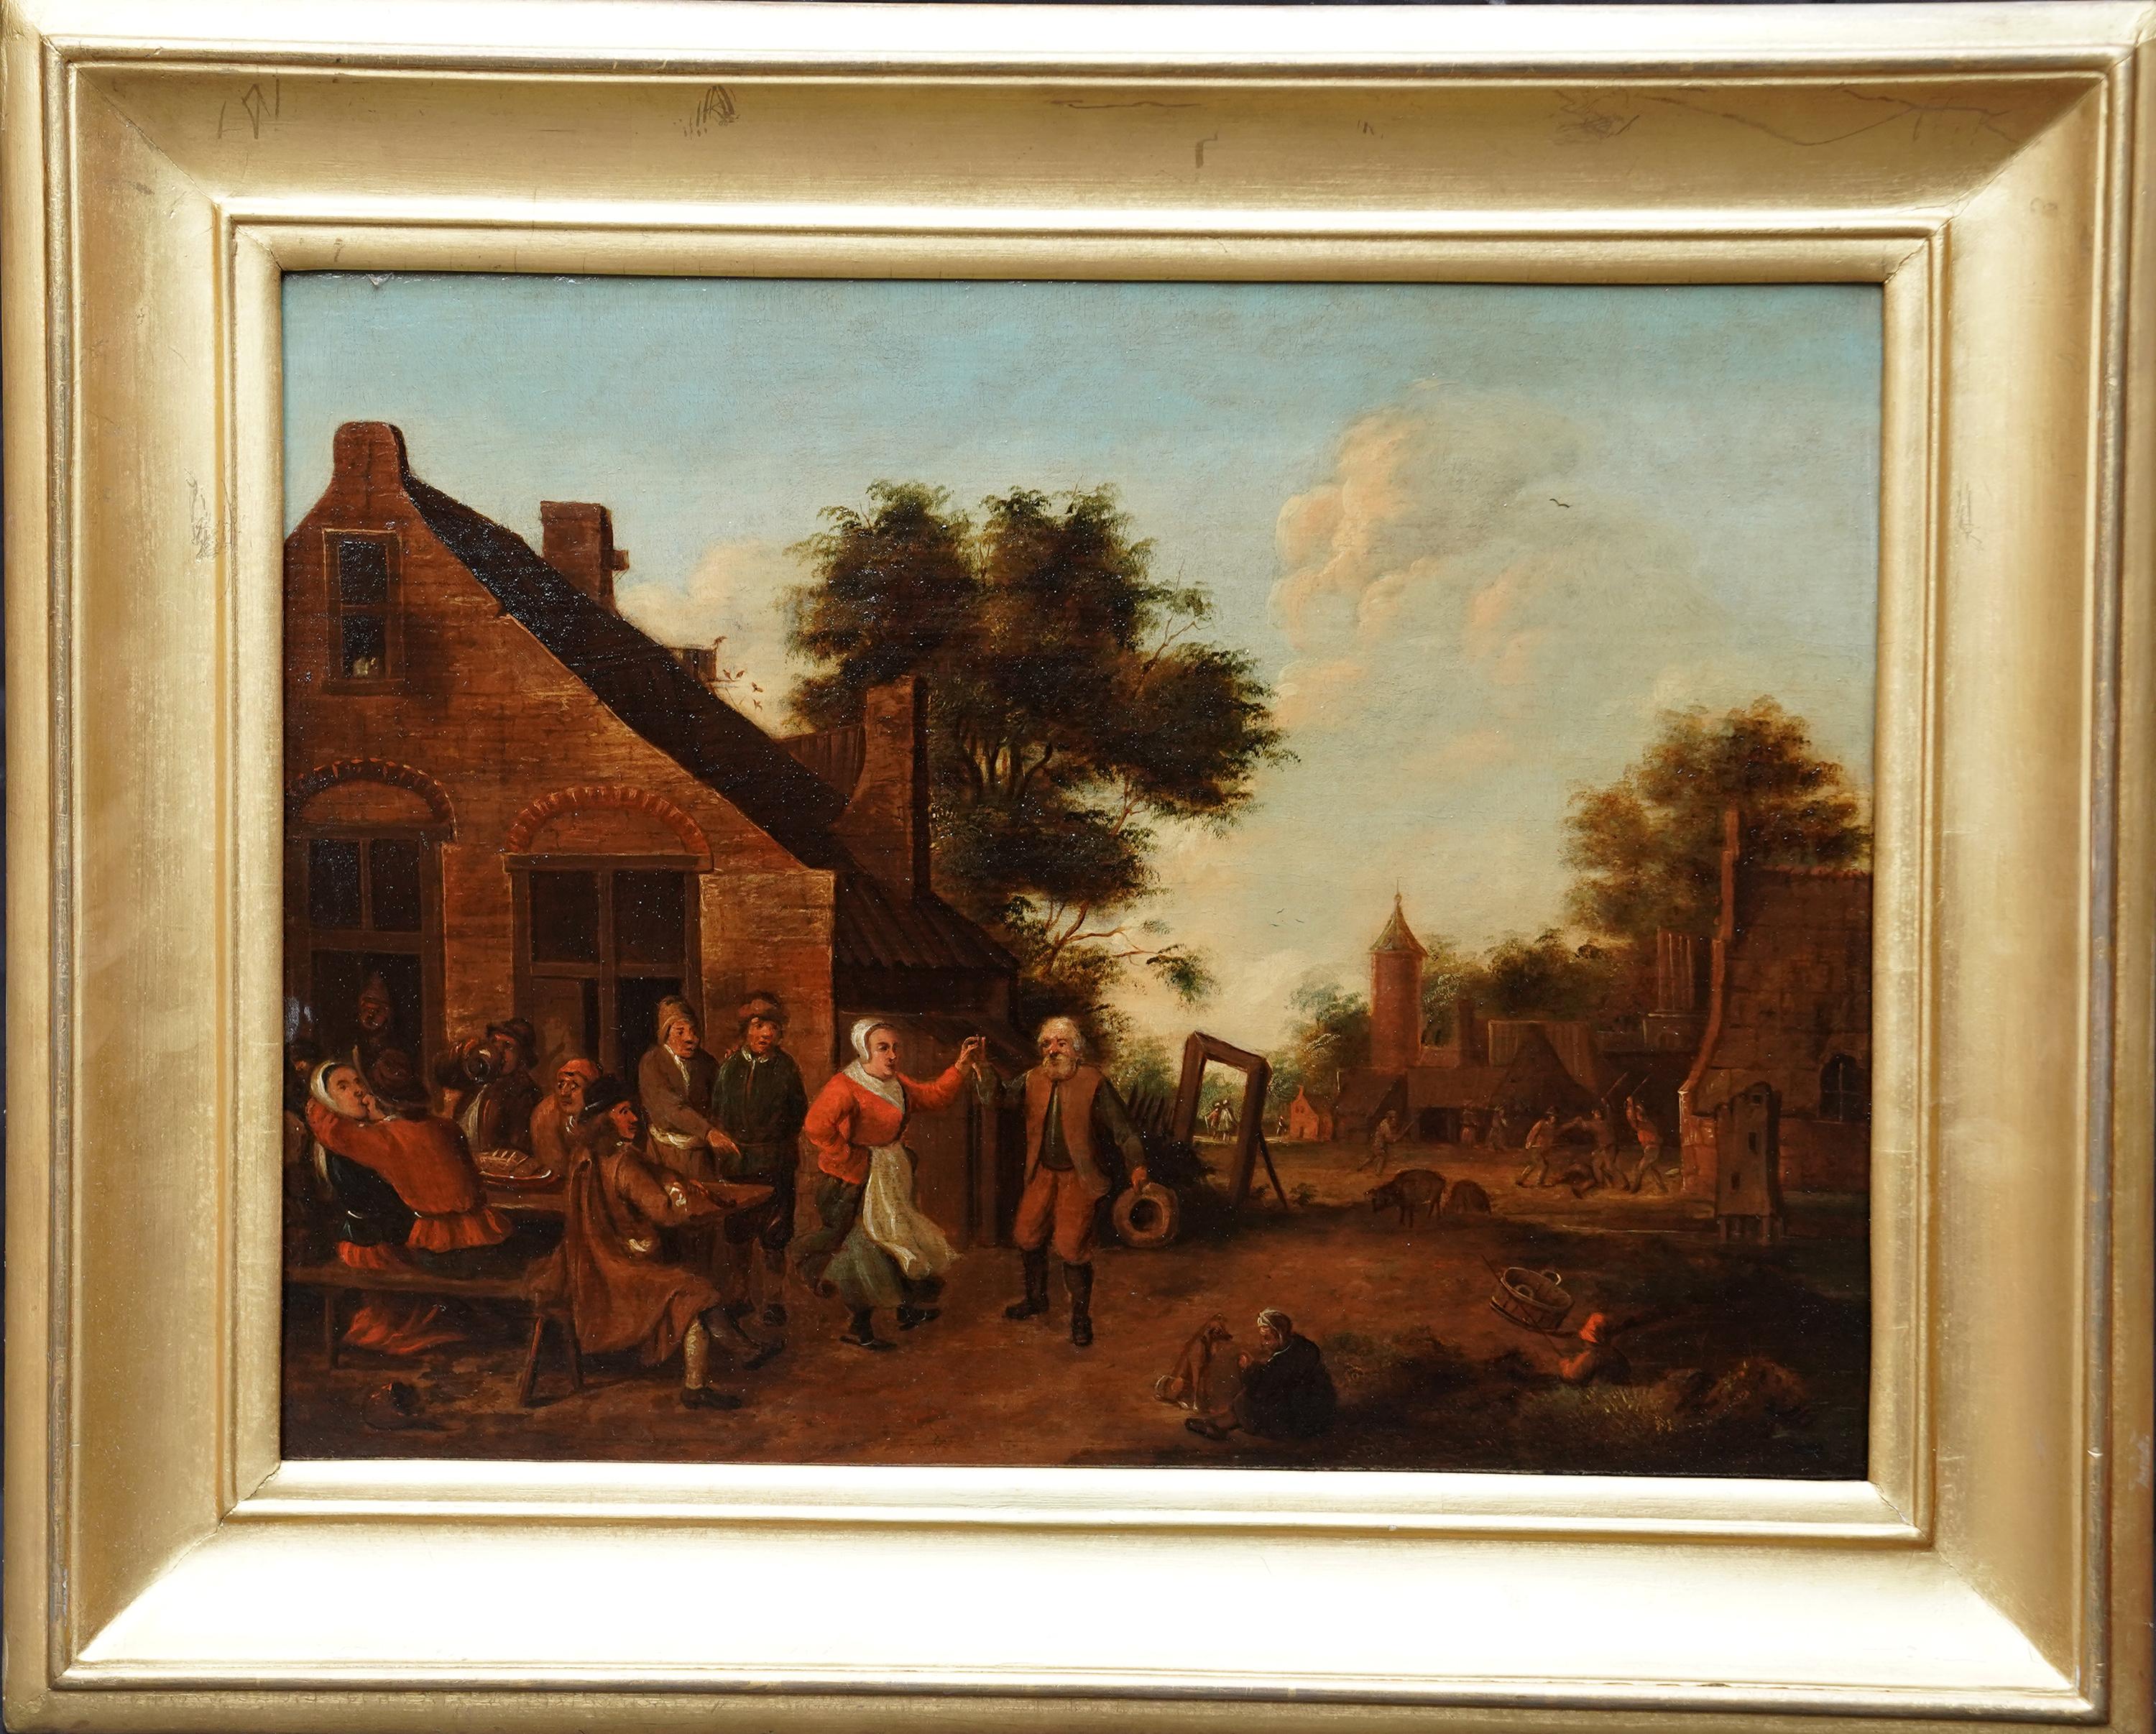 Villagers in a Landscape - Flemish 17thC art figurative landscape oil painting